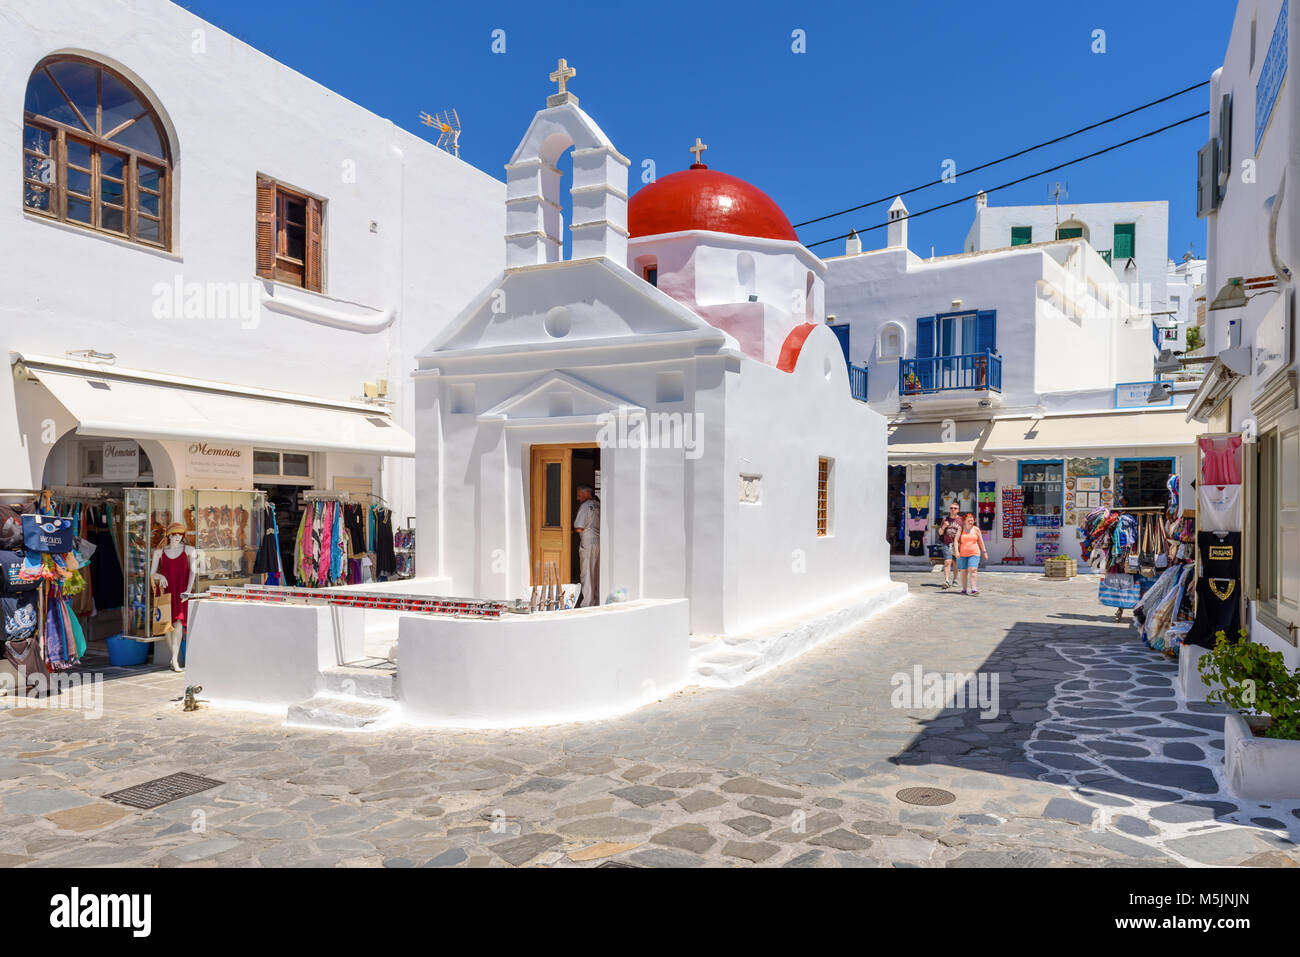 MYKONOS, GRÈCE - 23 mai 2017 : une vue de l'église grecque typique immeuble sur place avec des magasins dans la ville de Mykonos. Cyclades, Grèce Banque D'Images